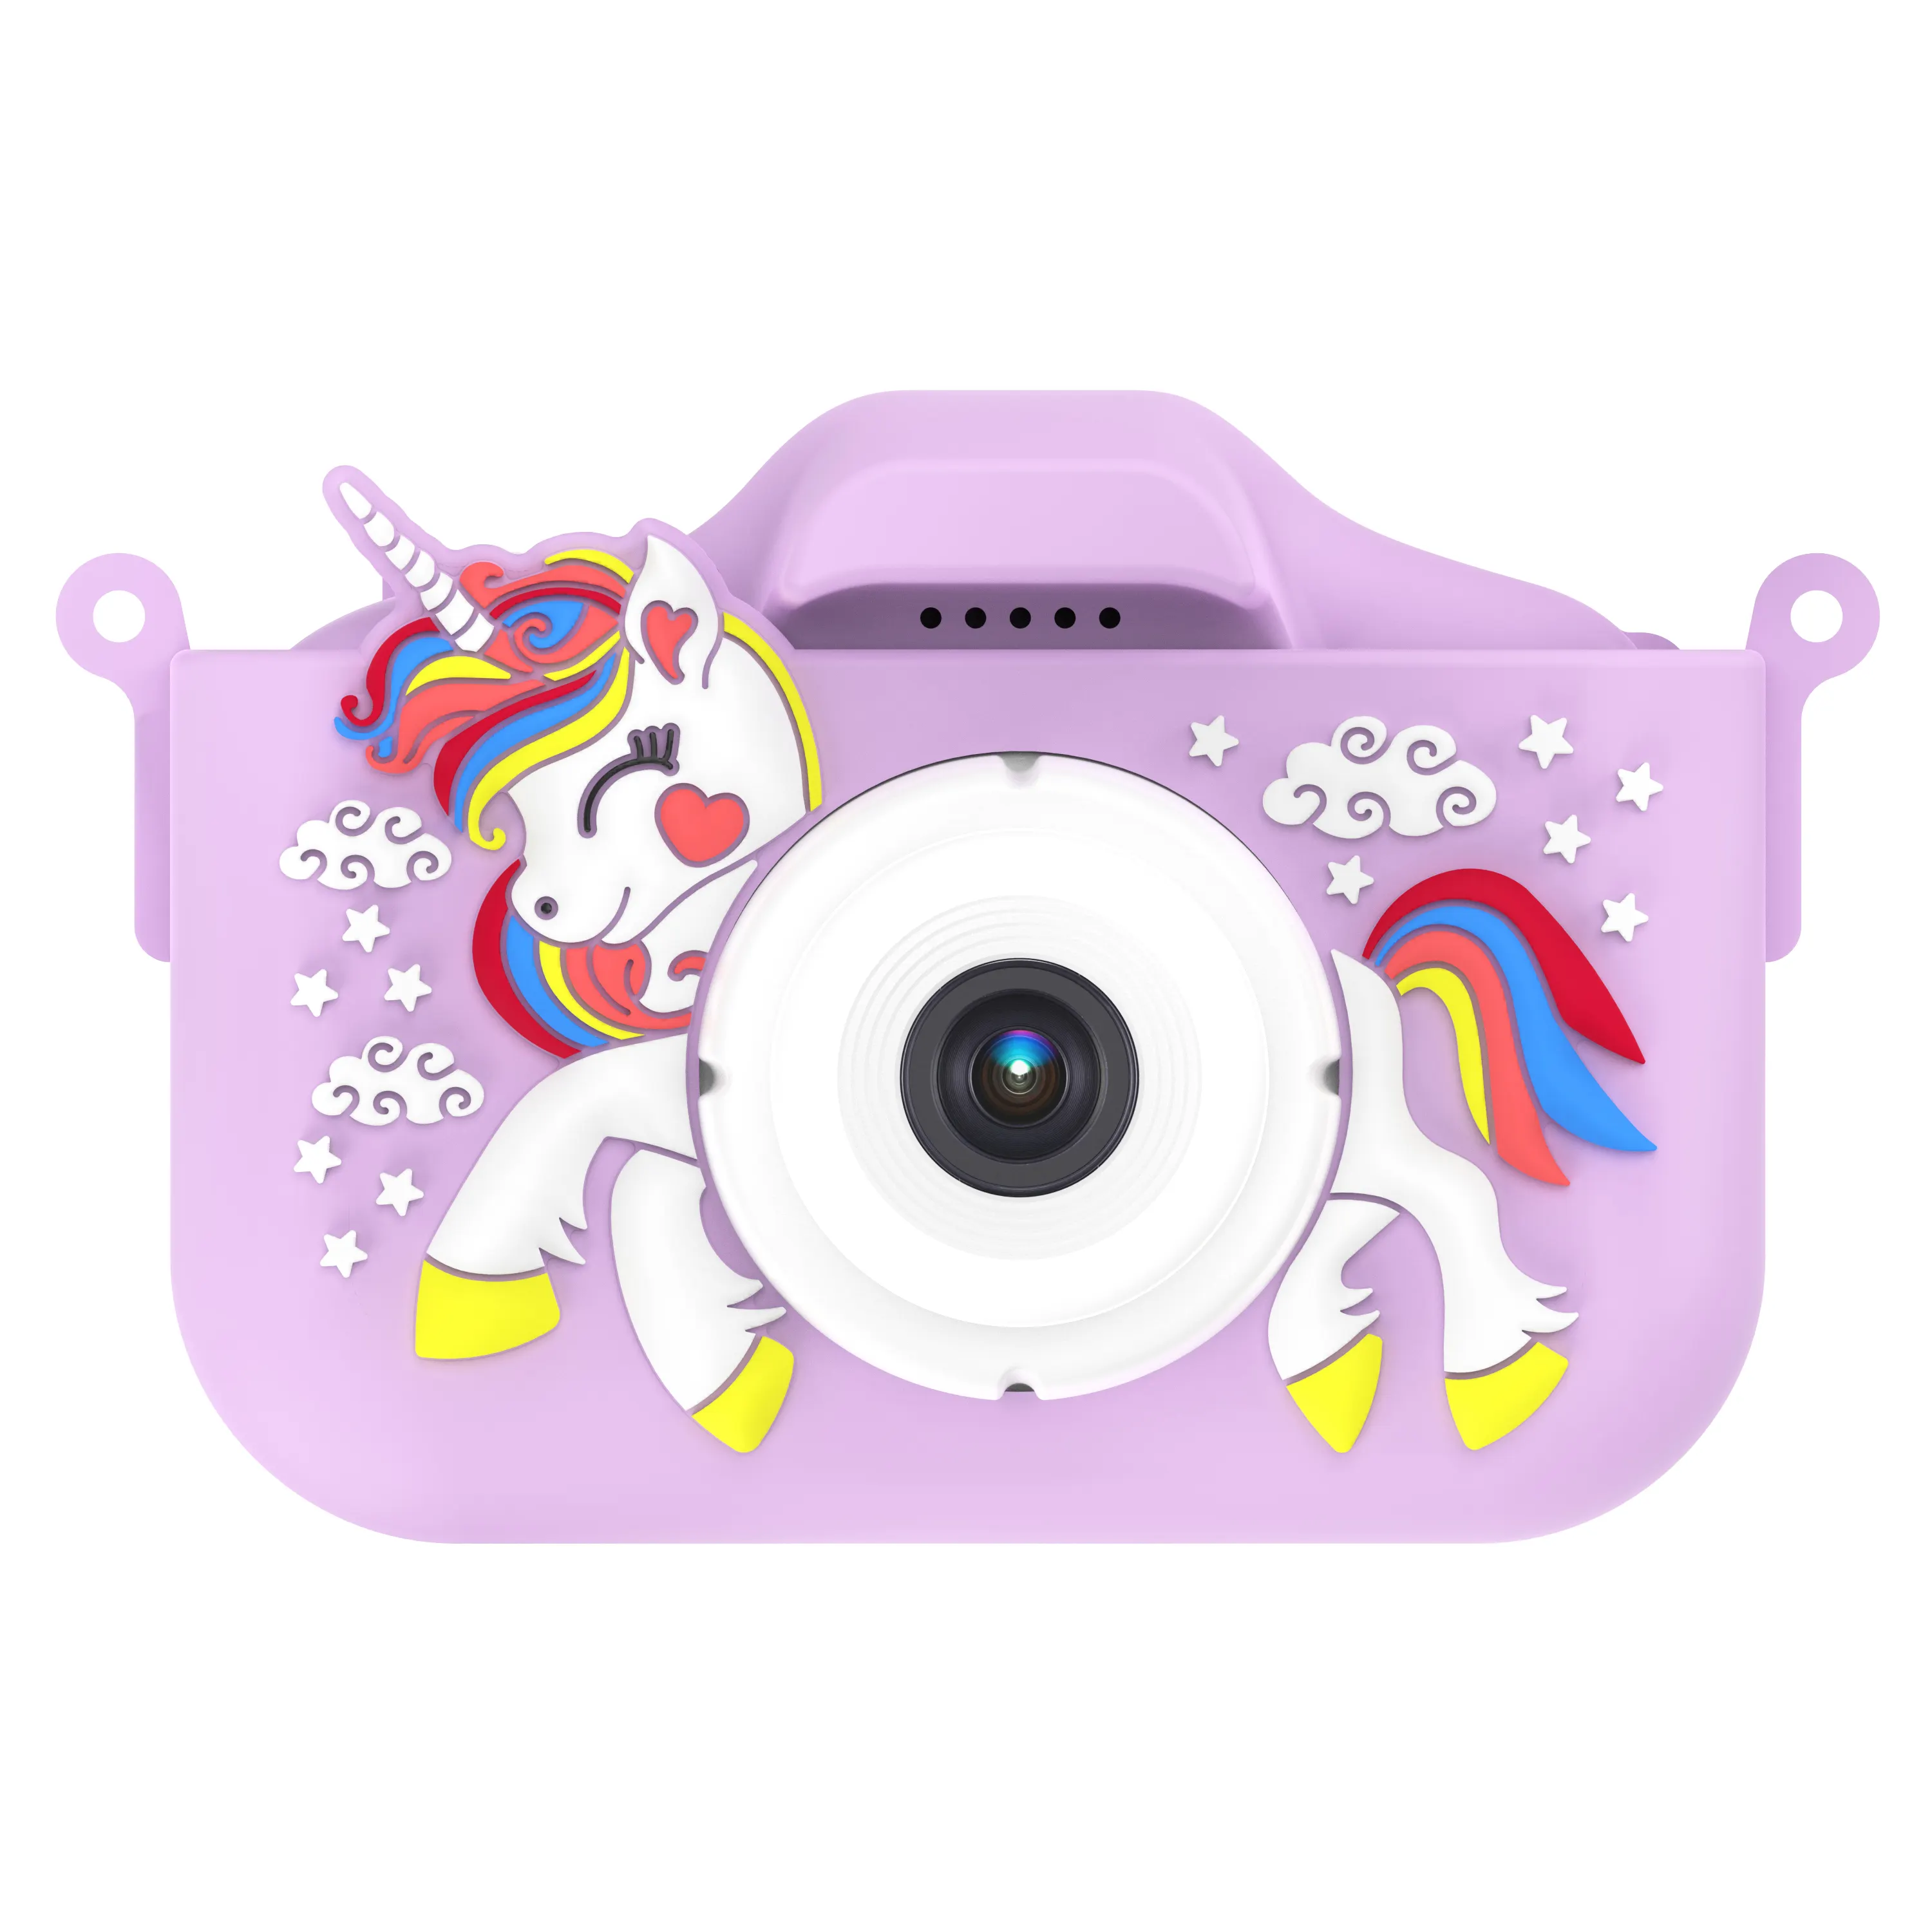 Anno nuovo anno regali di aggiornamento per bambini Selfie Camera natale compleanno per ragazzi ragazze bambini macchina fotografica digitale